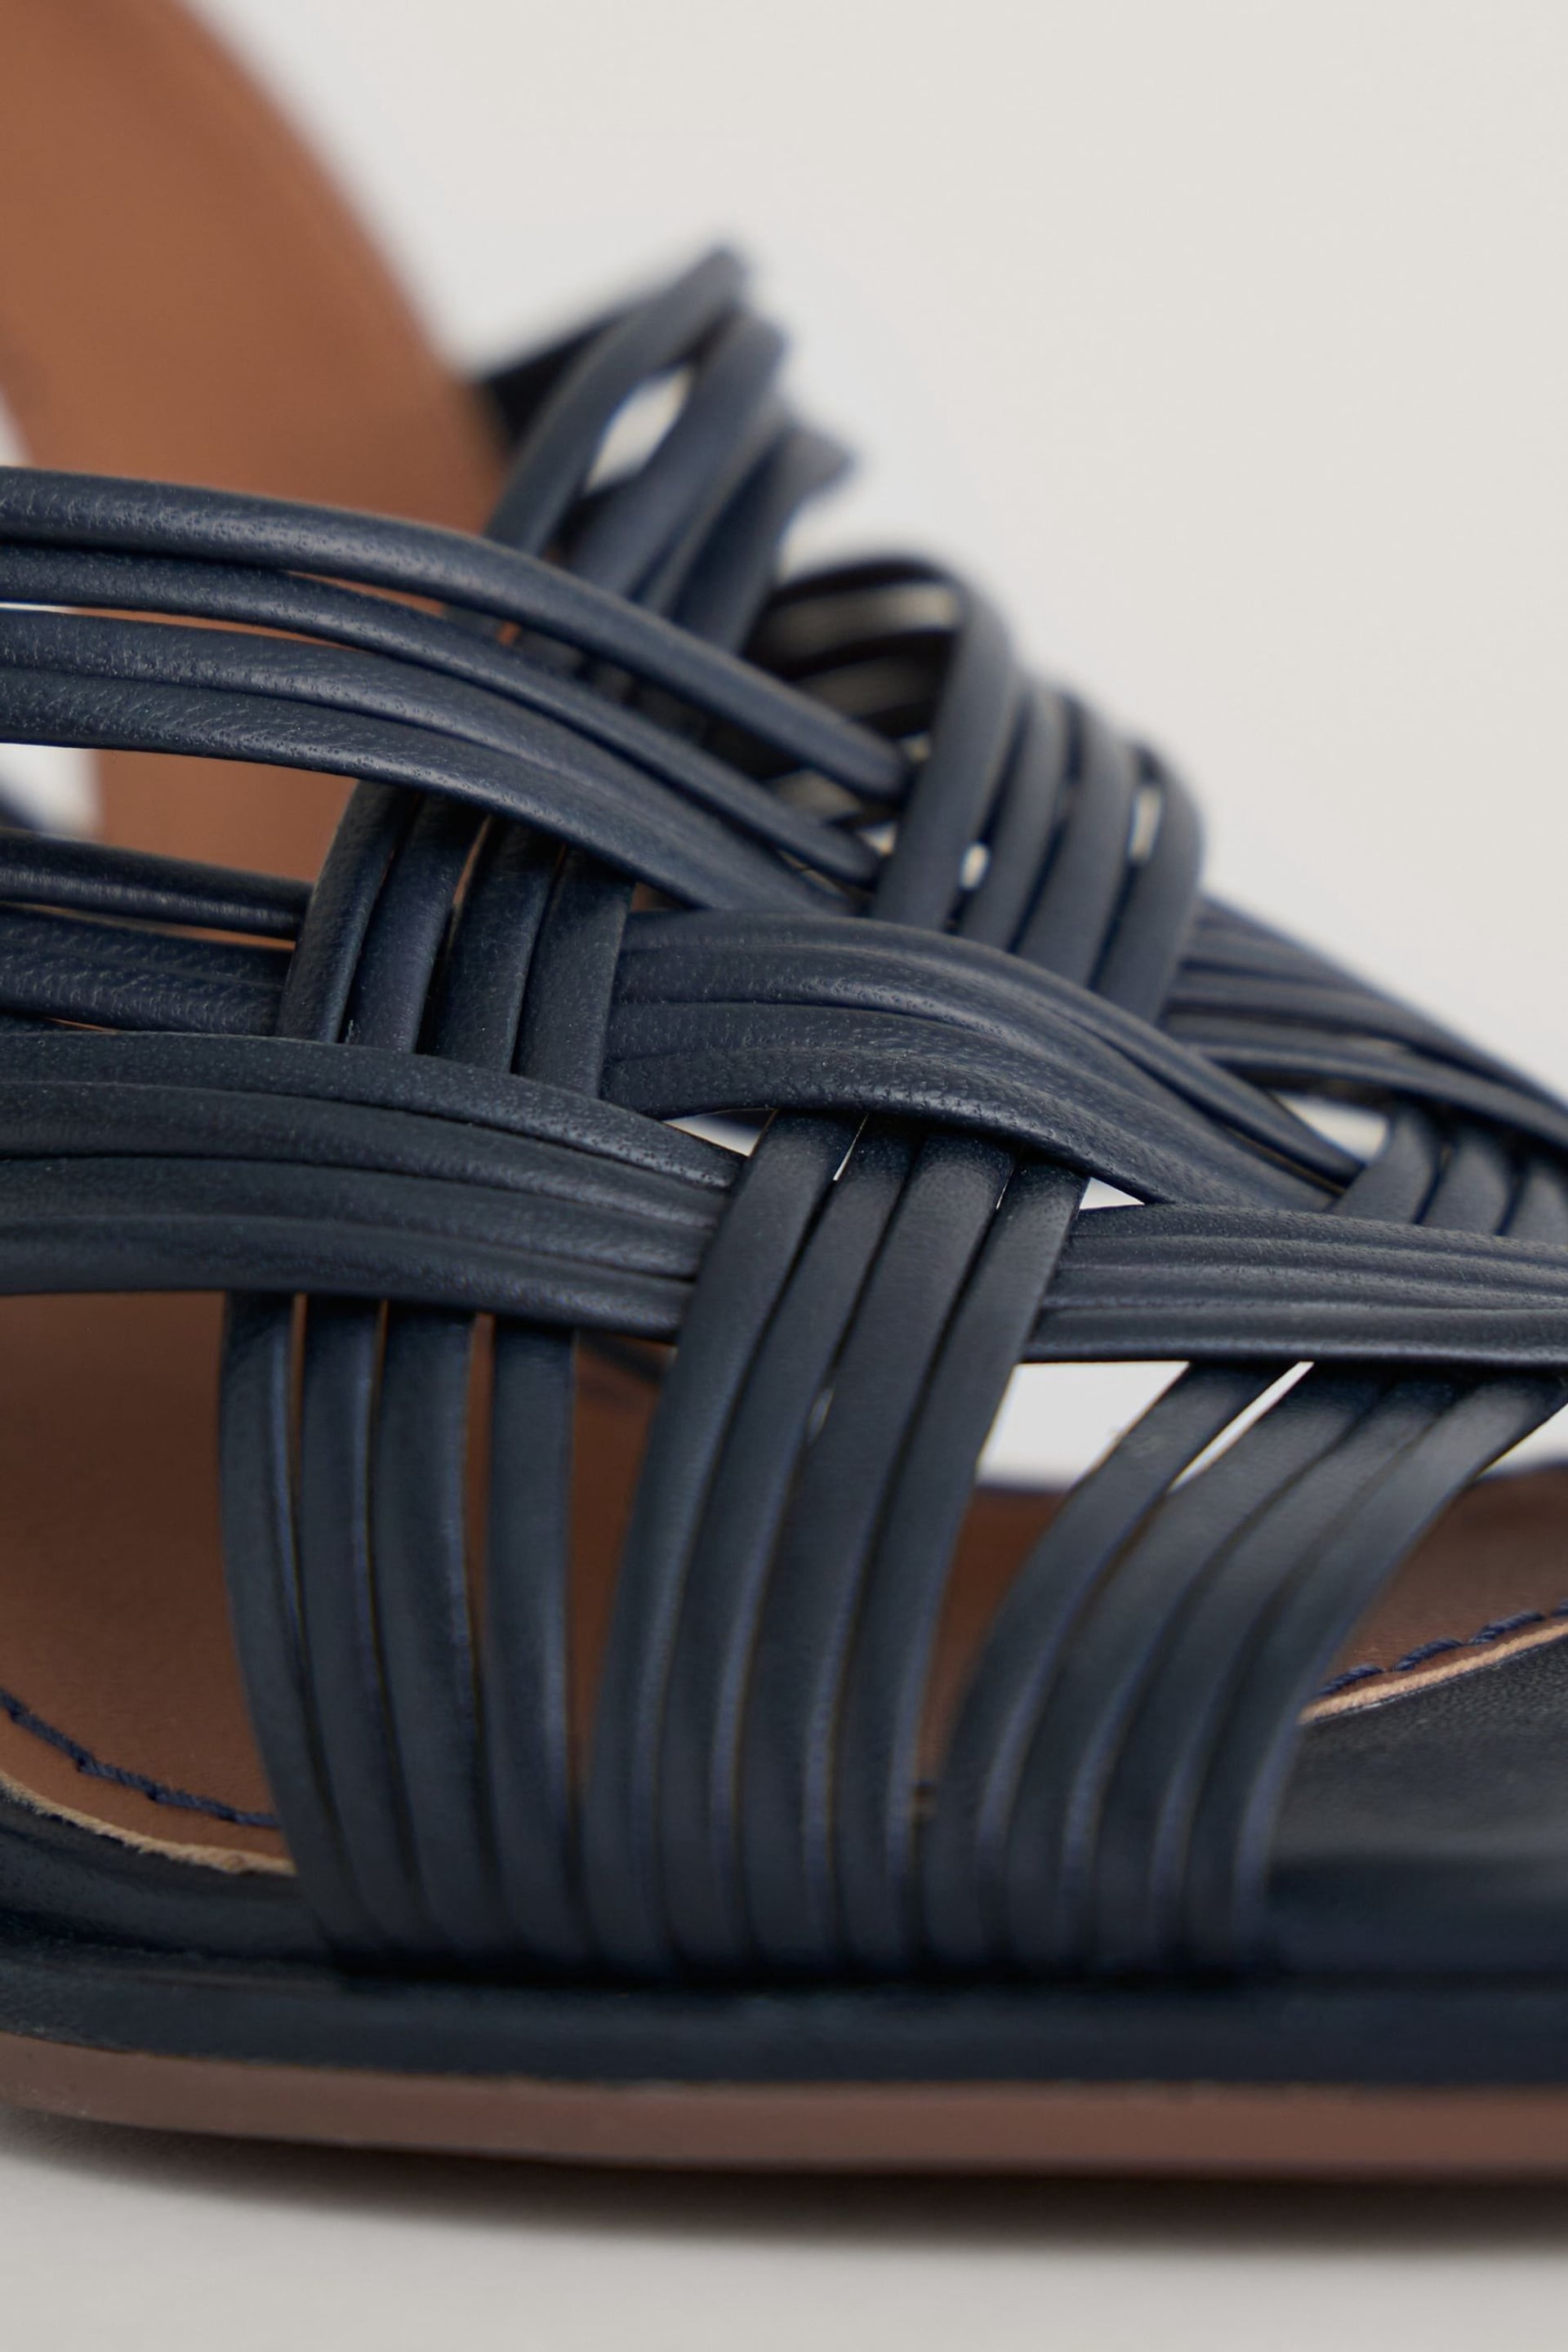 Seasalt Cornwall Blue Faerystone Mid Heel Leather Sandals - Image 5 of 5